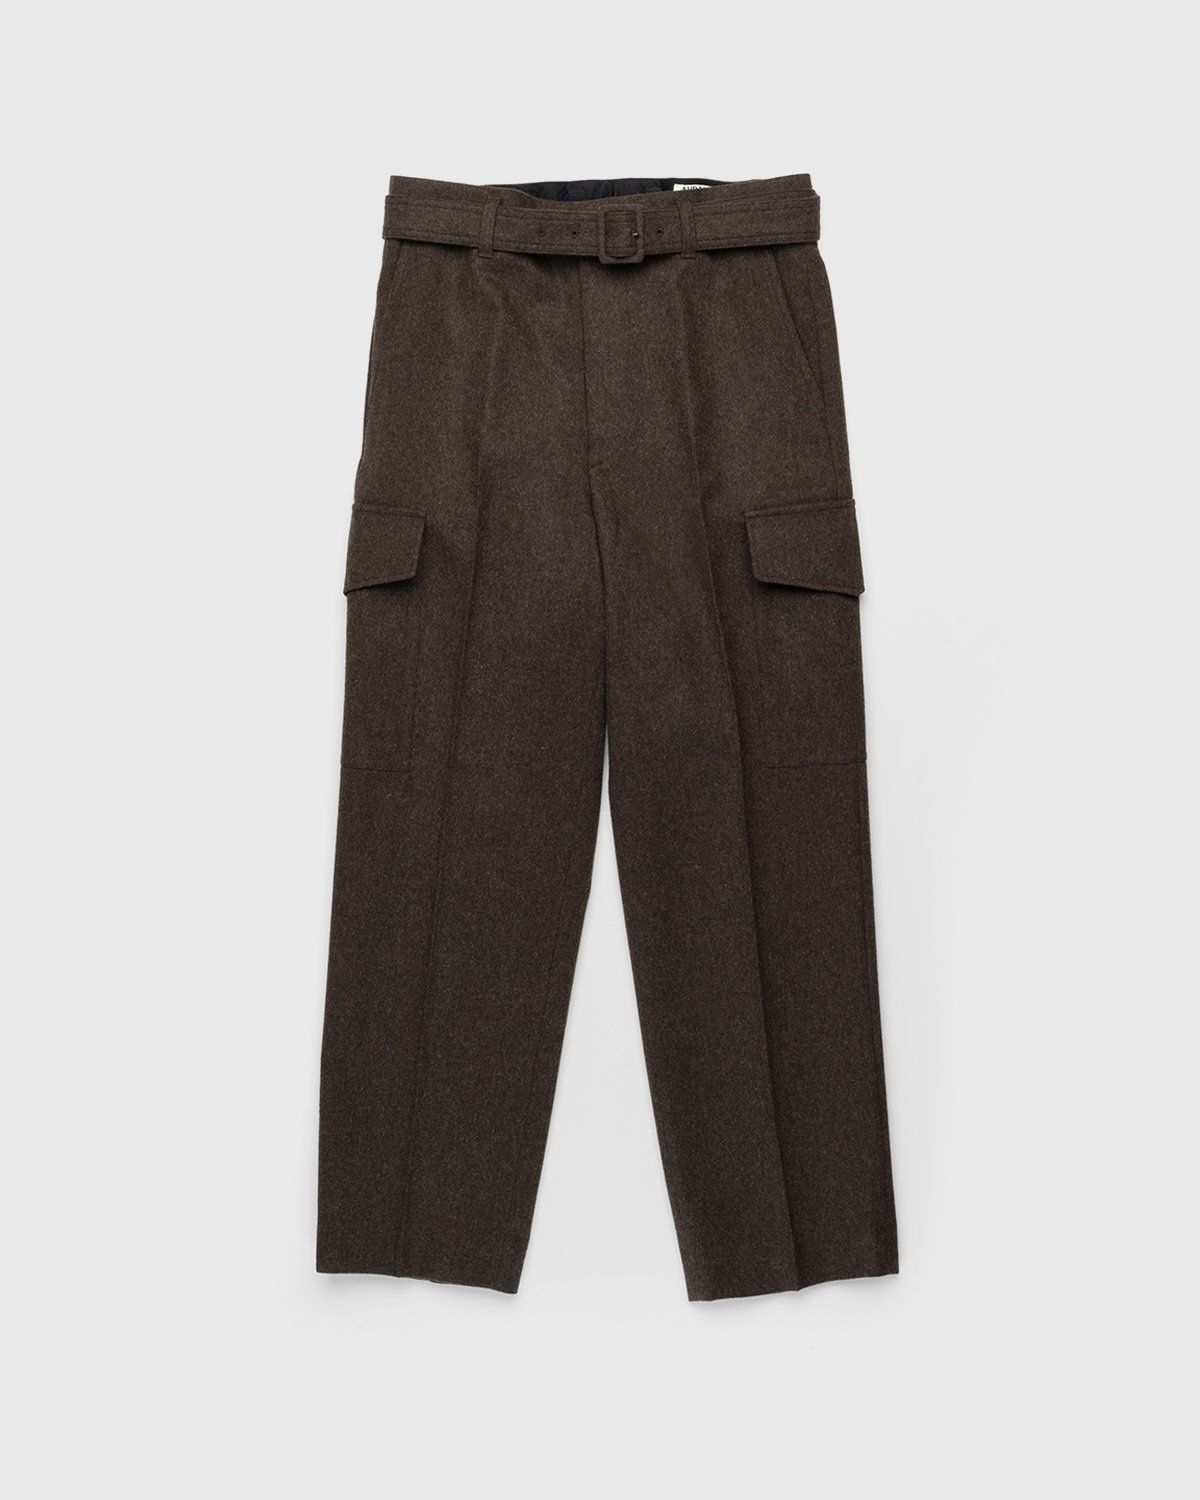 Auralee – High-Waisted Shetland Wool Pants Dark Brown - Cargo Pants - Brown - Image 1